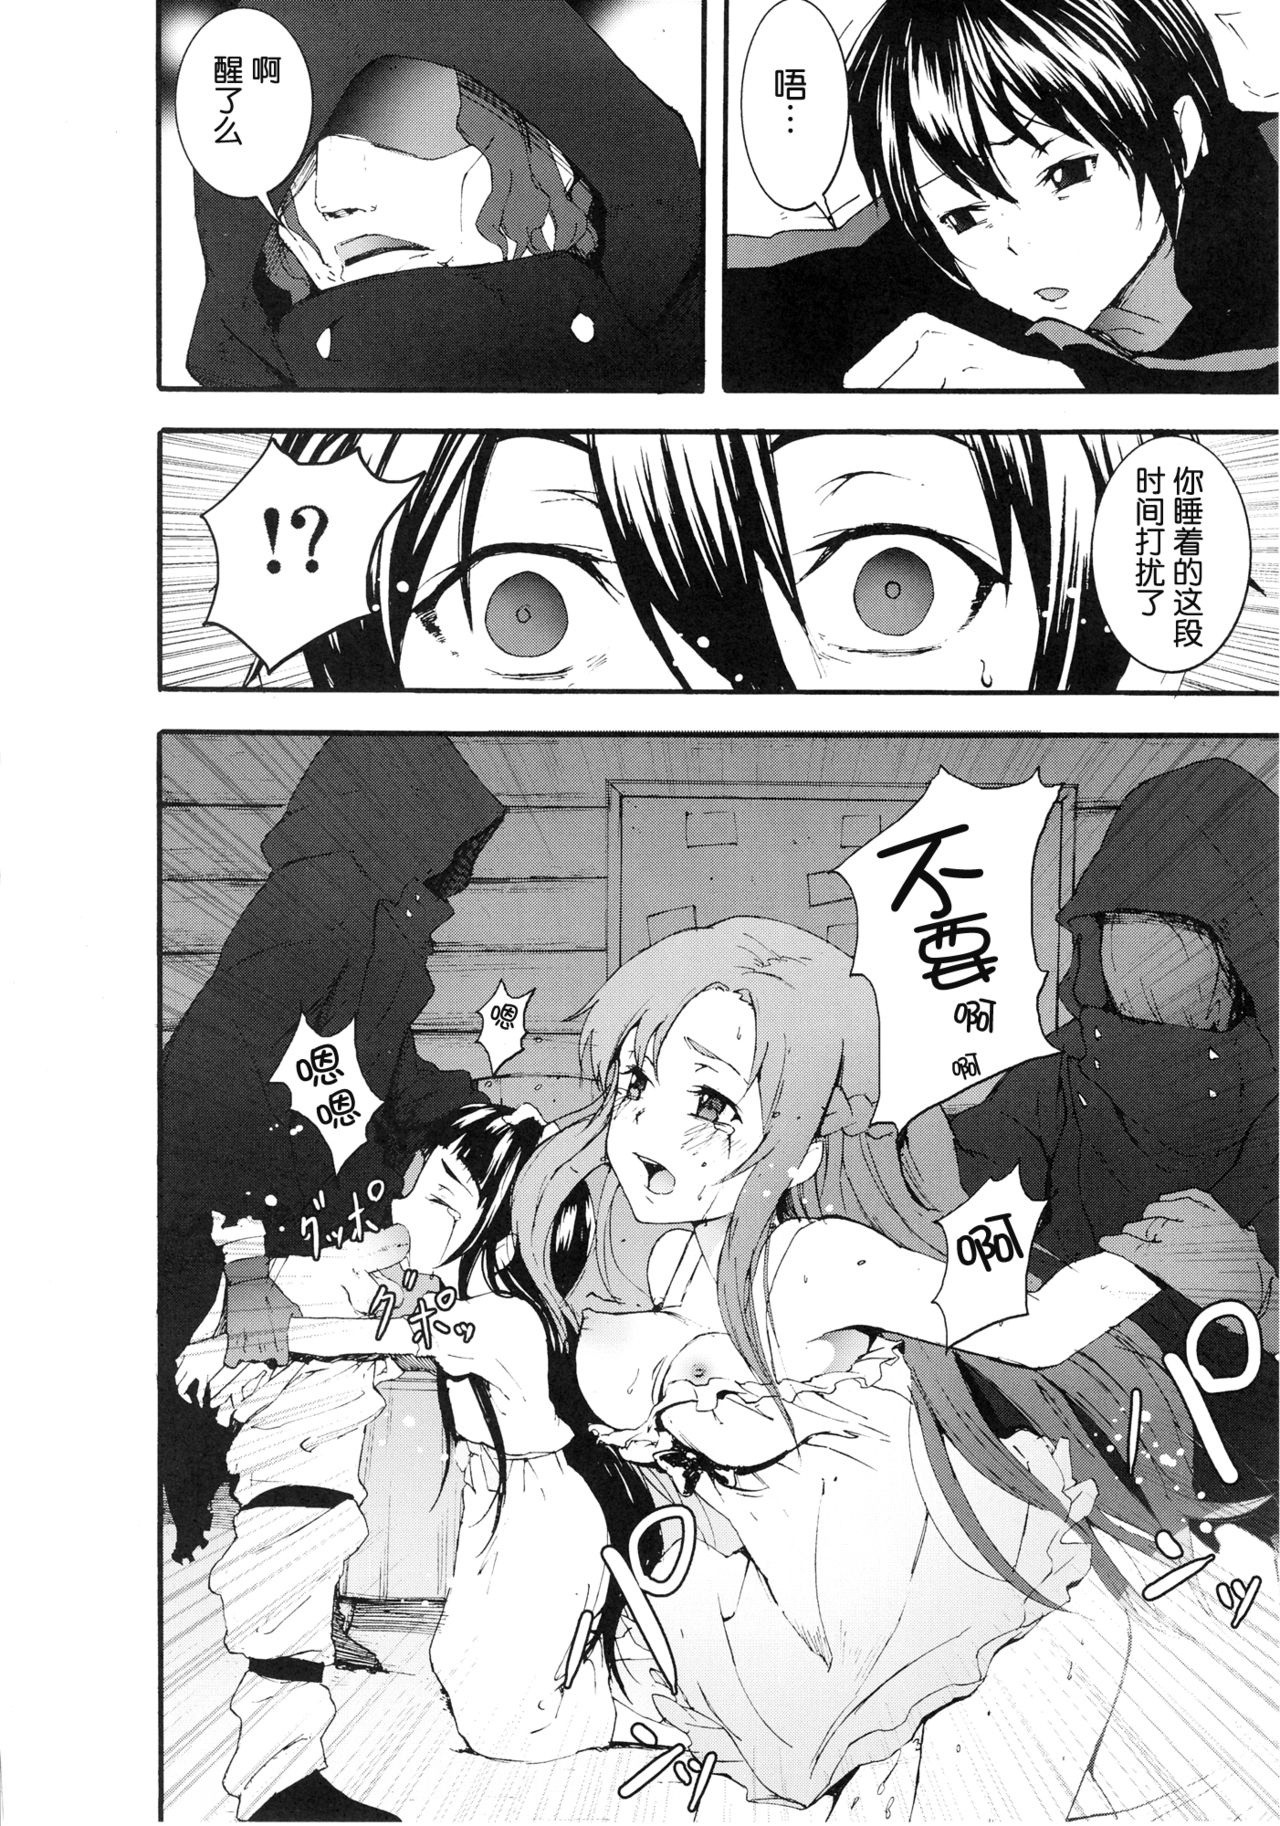 Asuna to Yui no Jigoku Rape hentai manga picture 2